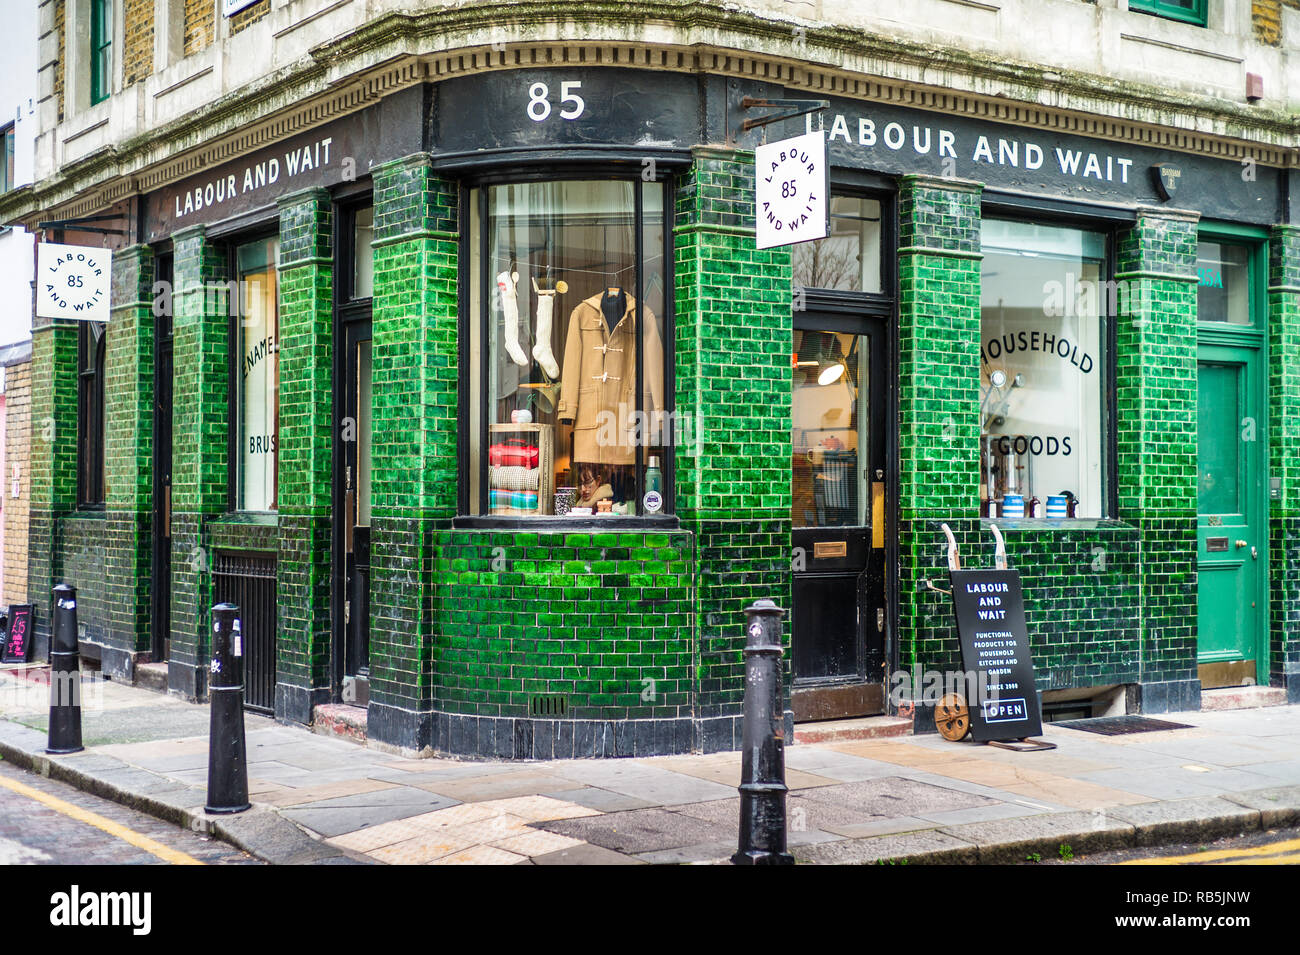 Le Labour and Wait vintage style maison et magasin de vêtements dans la zone à la mode Shoreditch de Londres. Travail et attente Londres. Banque D'Images